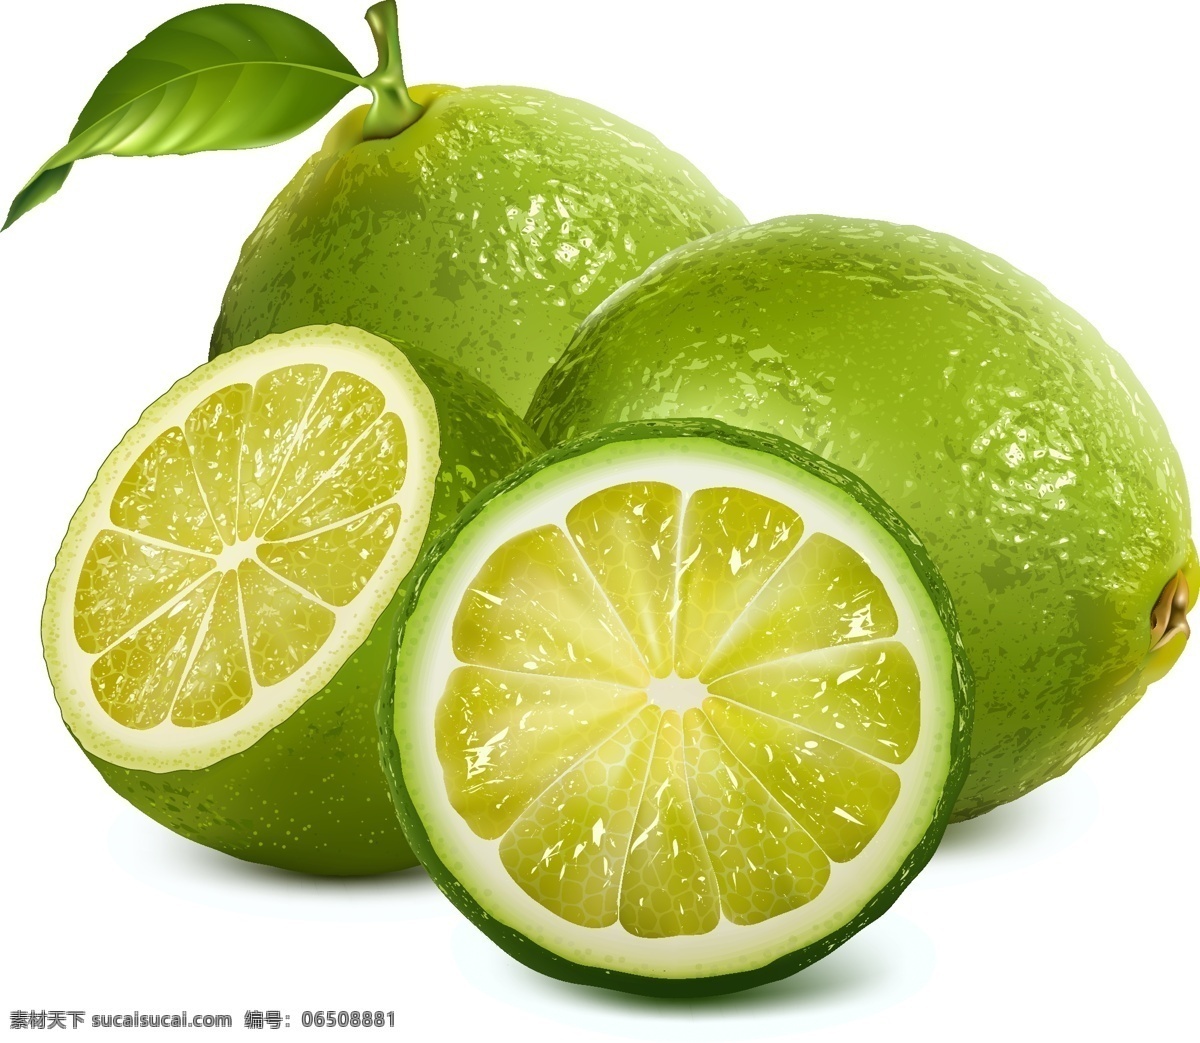 柠檬 水果 鲜柠檬 新鲜水果 洋柠檬 益母果 青柠檬 绿色 可口的柠檬 进口柠檬 酸涩 去火 助消化 柠檬片 柠檬切片 平面素材